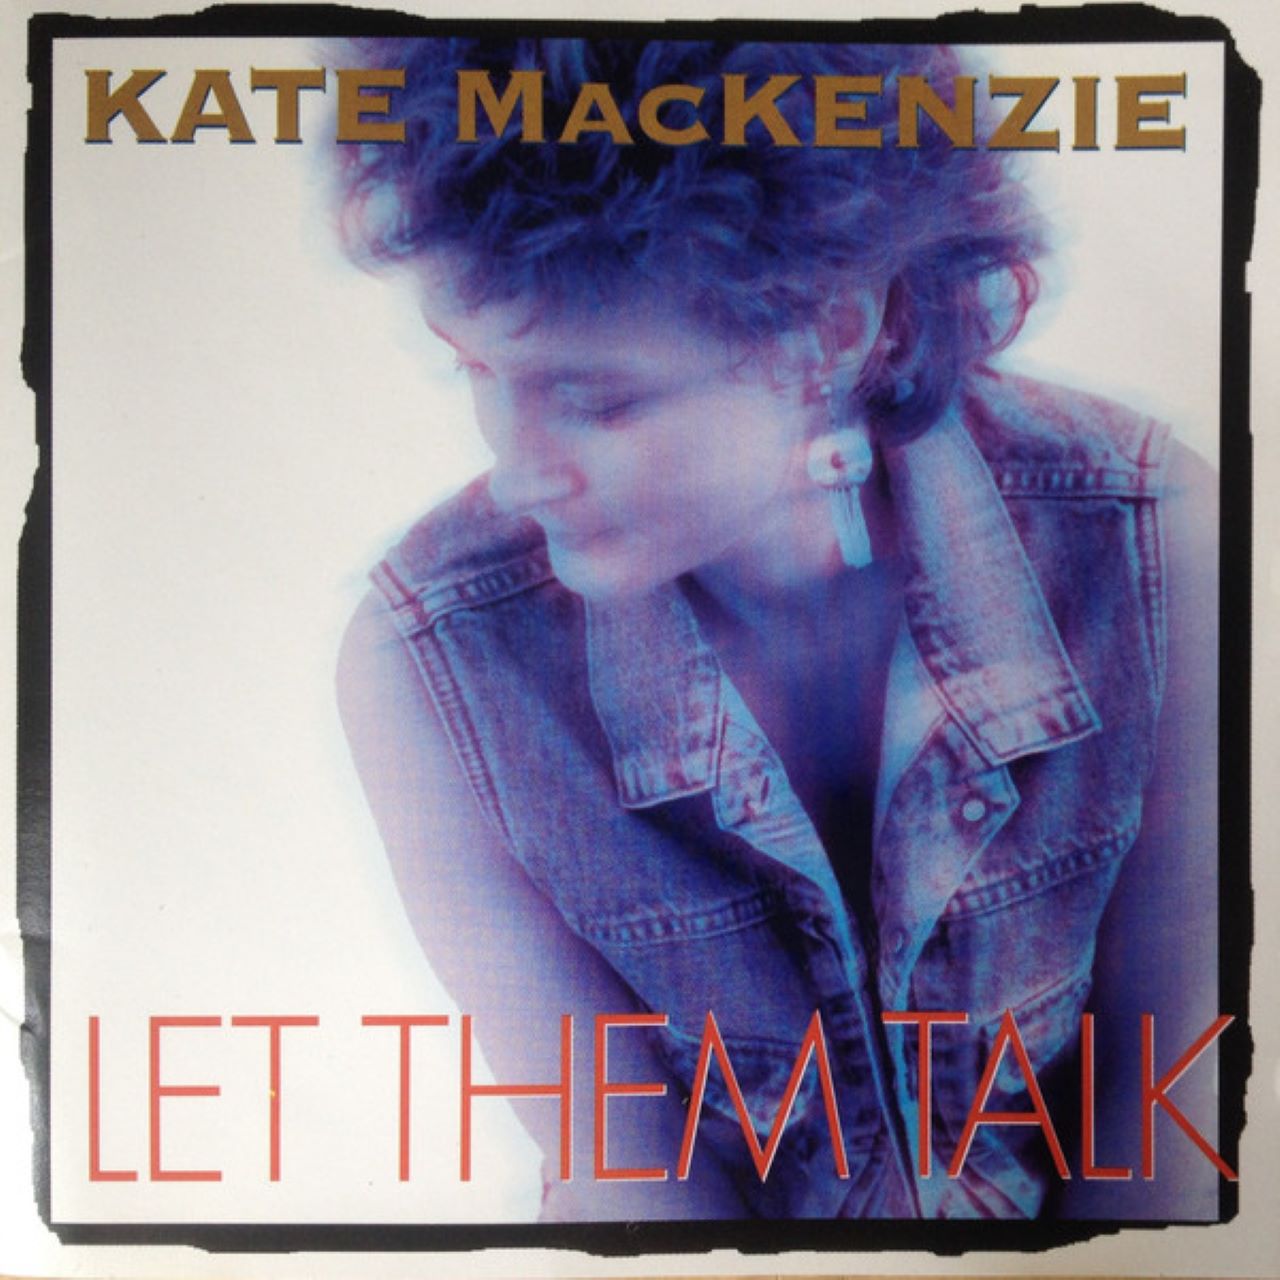 Kate McKenzie - Let Them Talk cover album